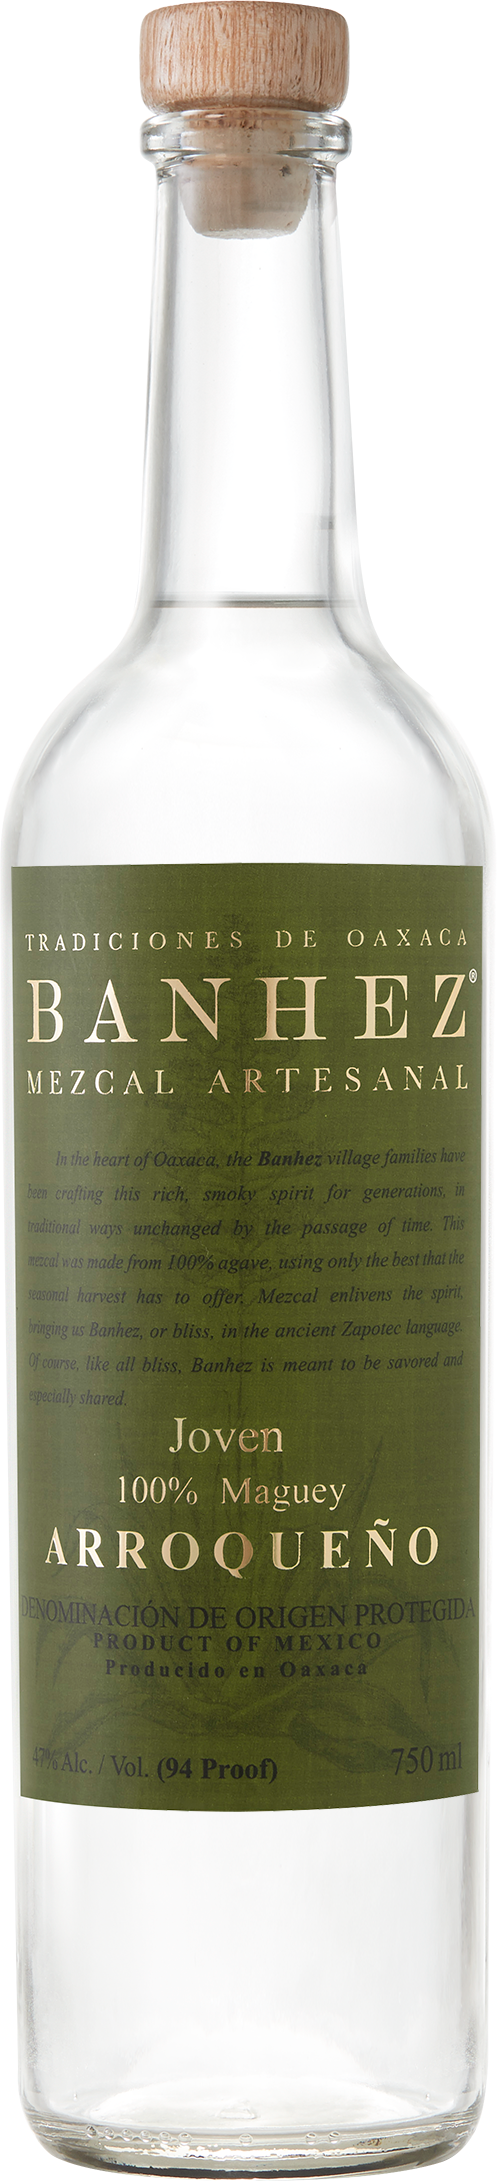 BANHEZ MEZCAL JOVEN ARROQUENO Mezcal BeverageWarehouse